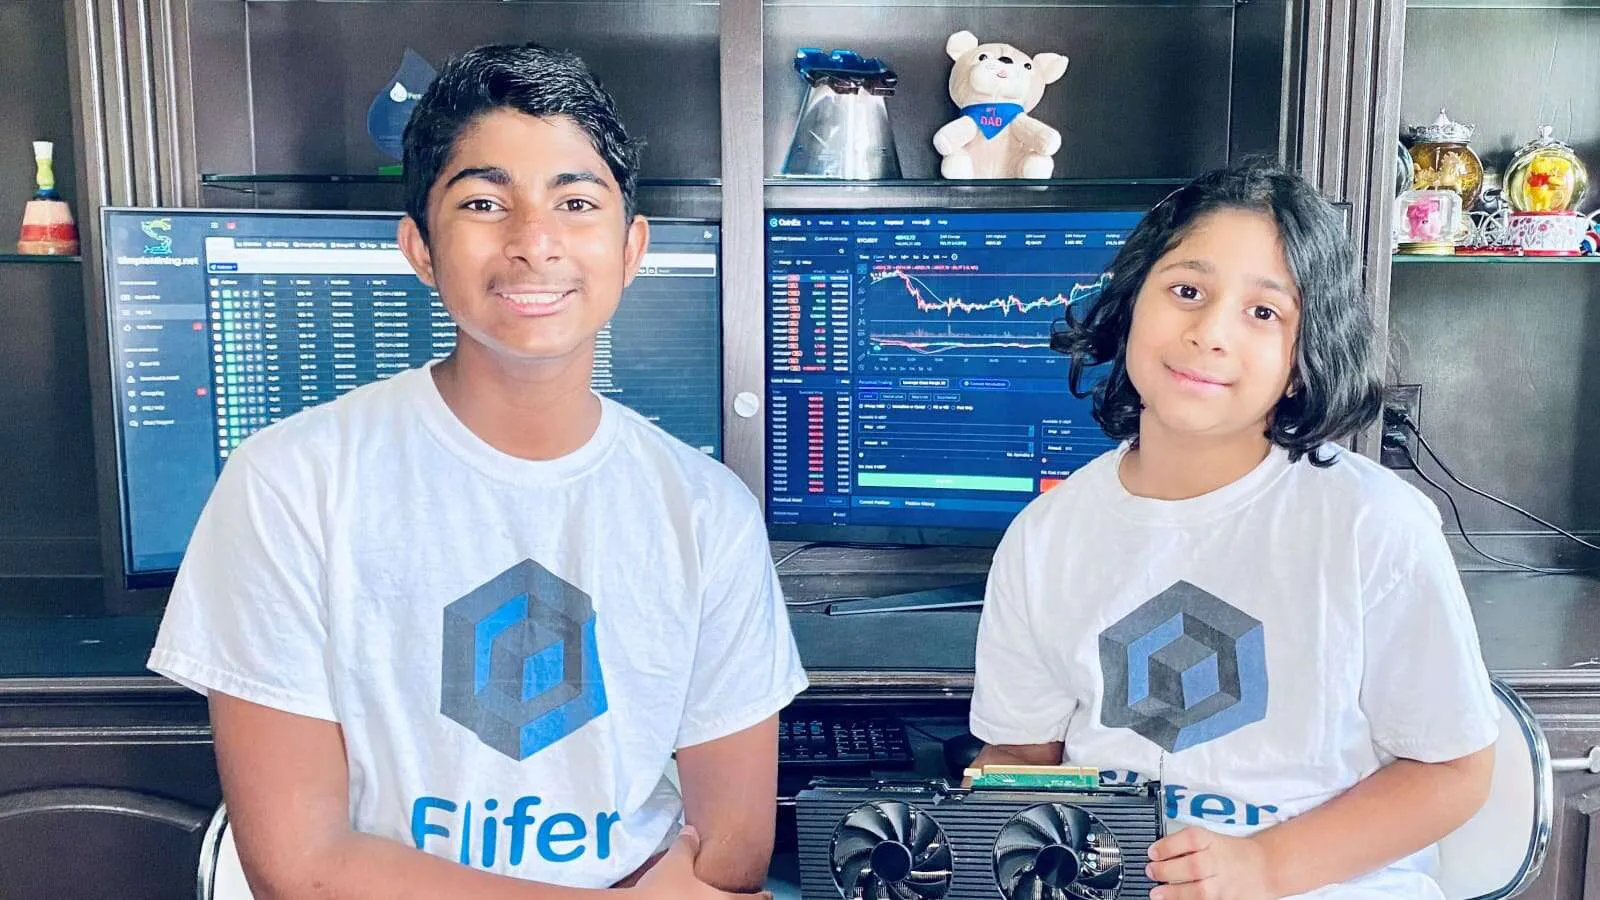 Kid siblings earn $160,000 in 7 months mining crypto